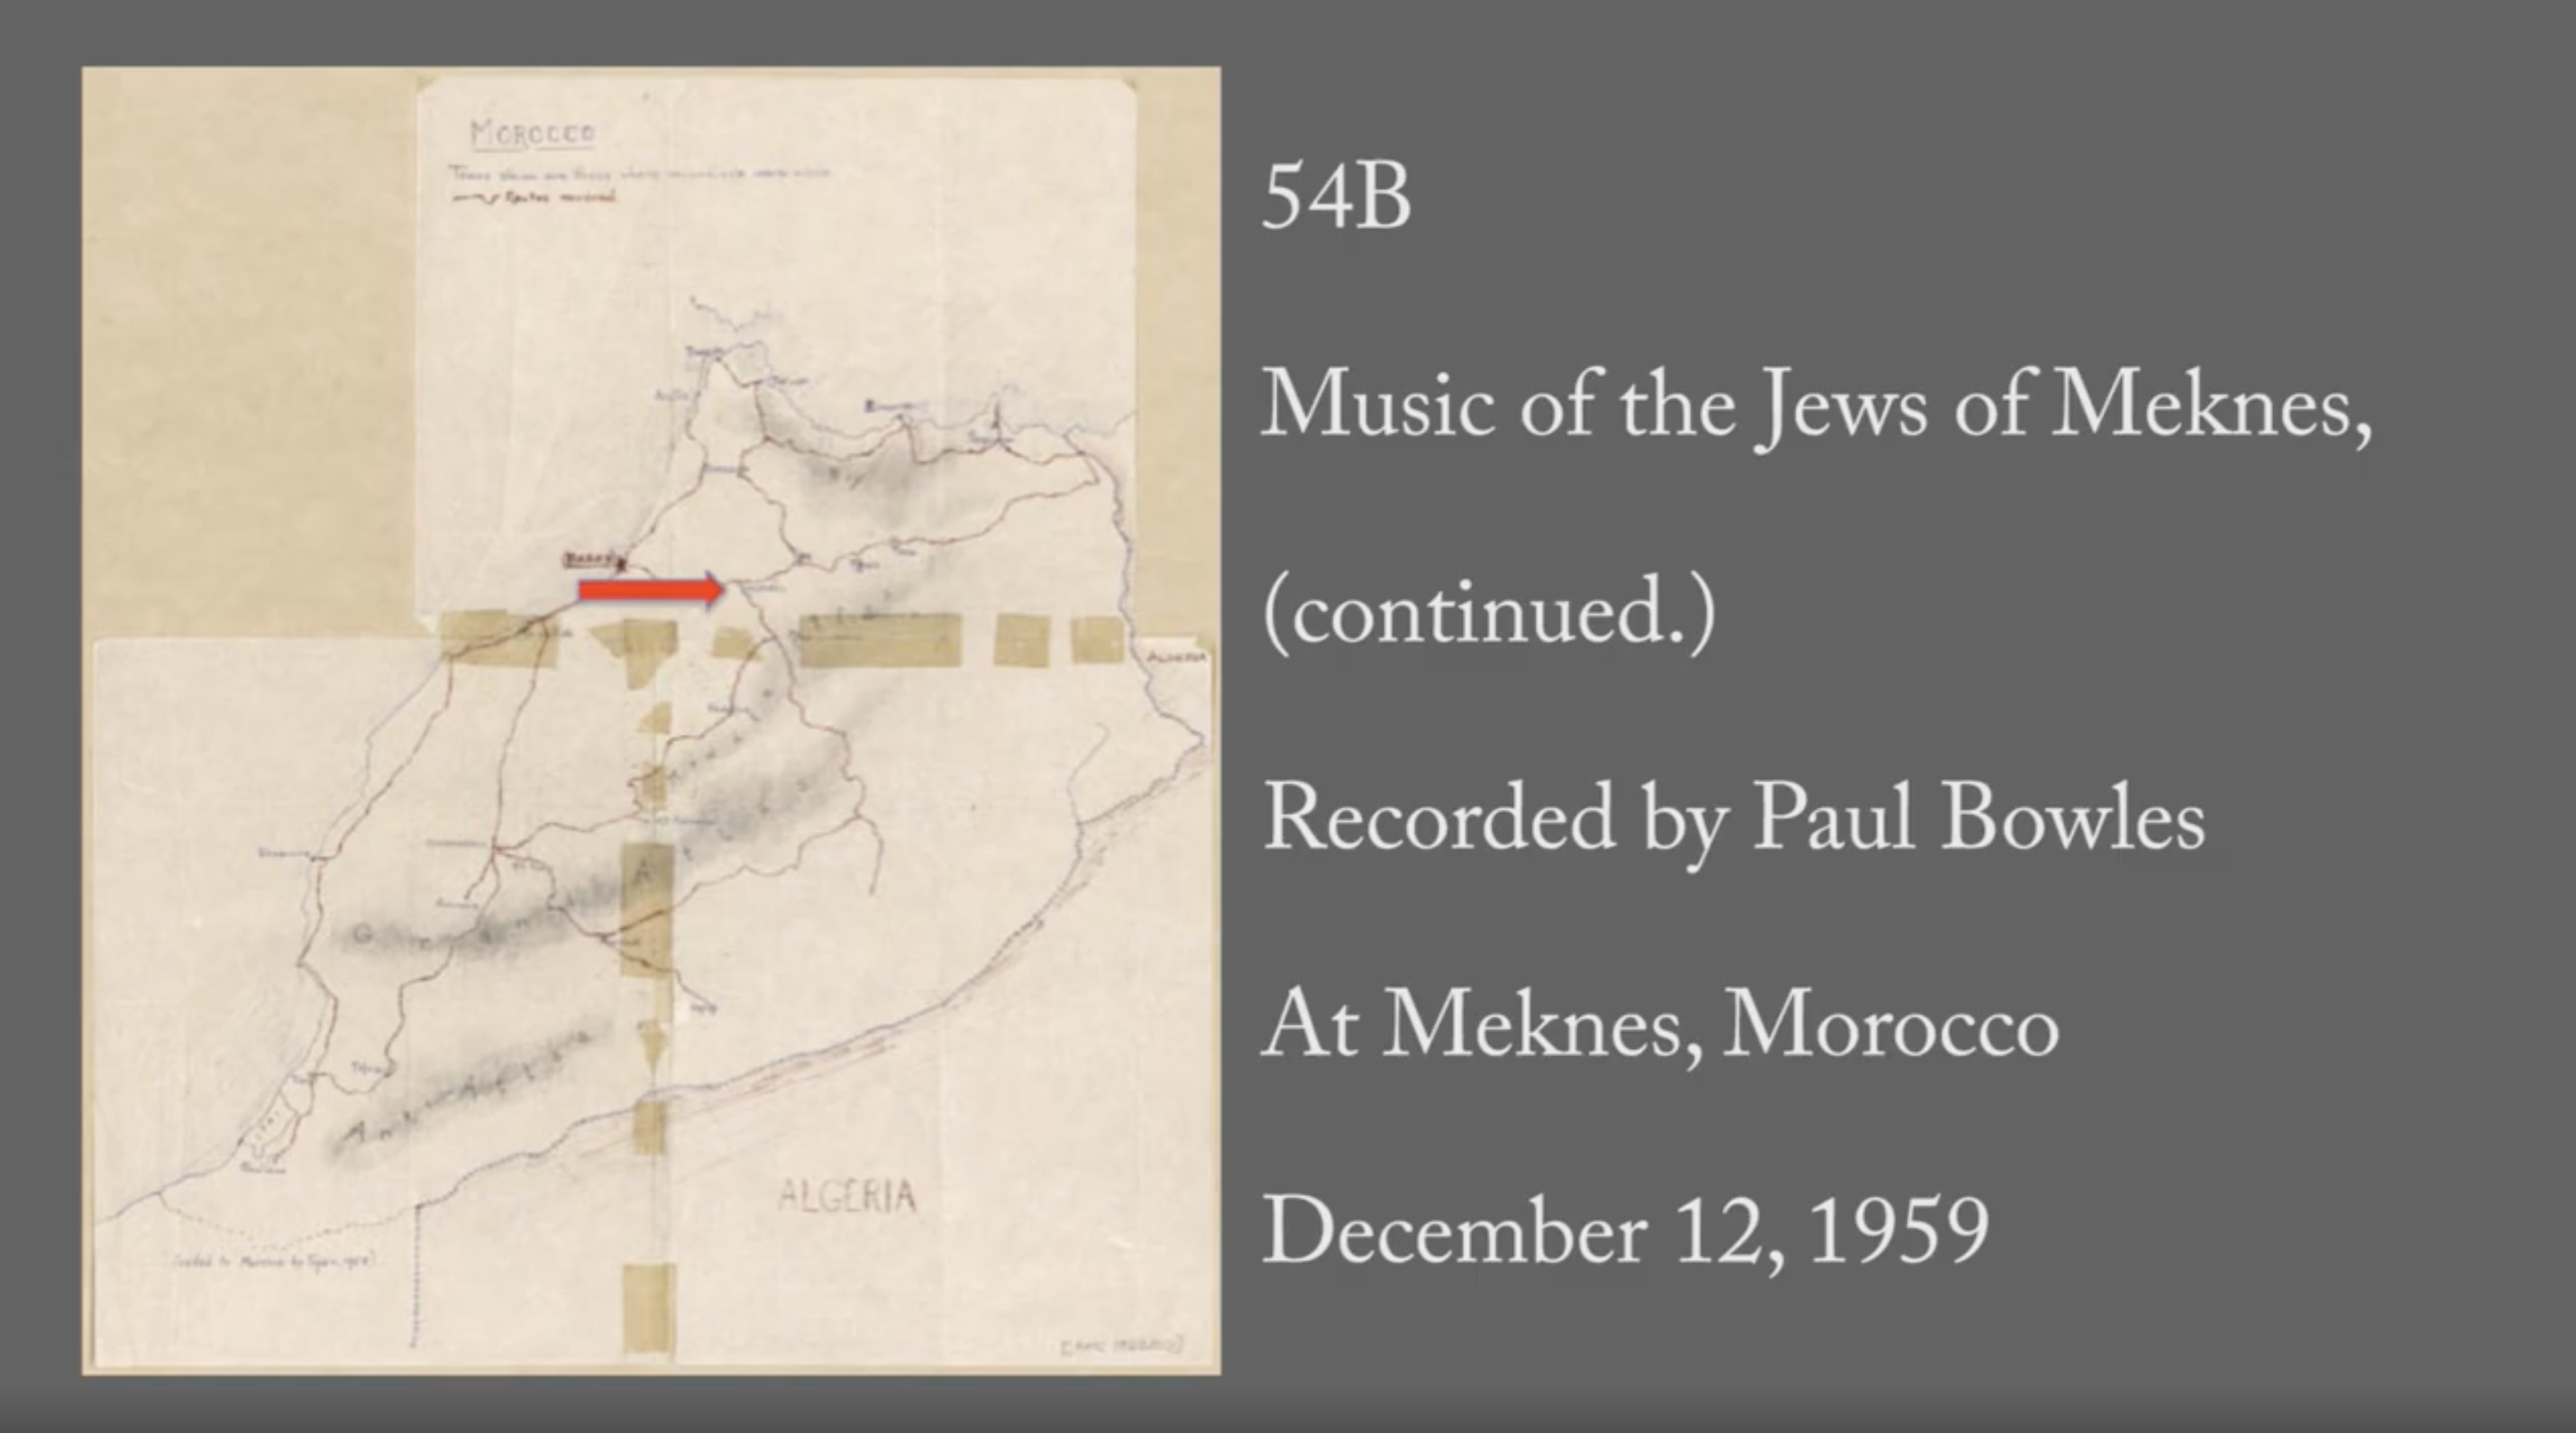 Talmud Torah School - 54B: Music of the Jews of Meknes (continued.)